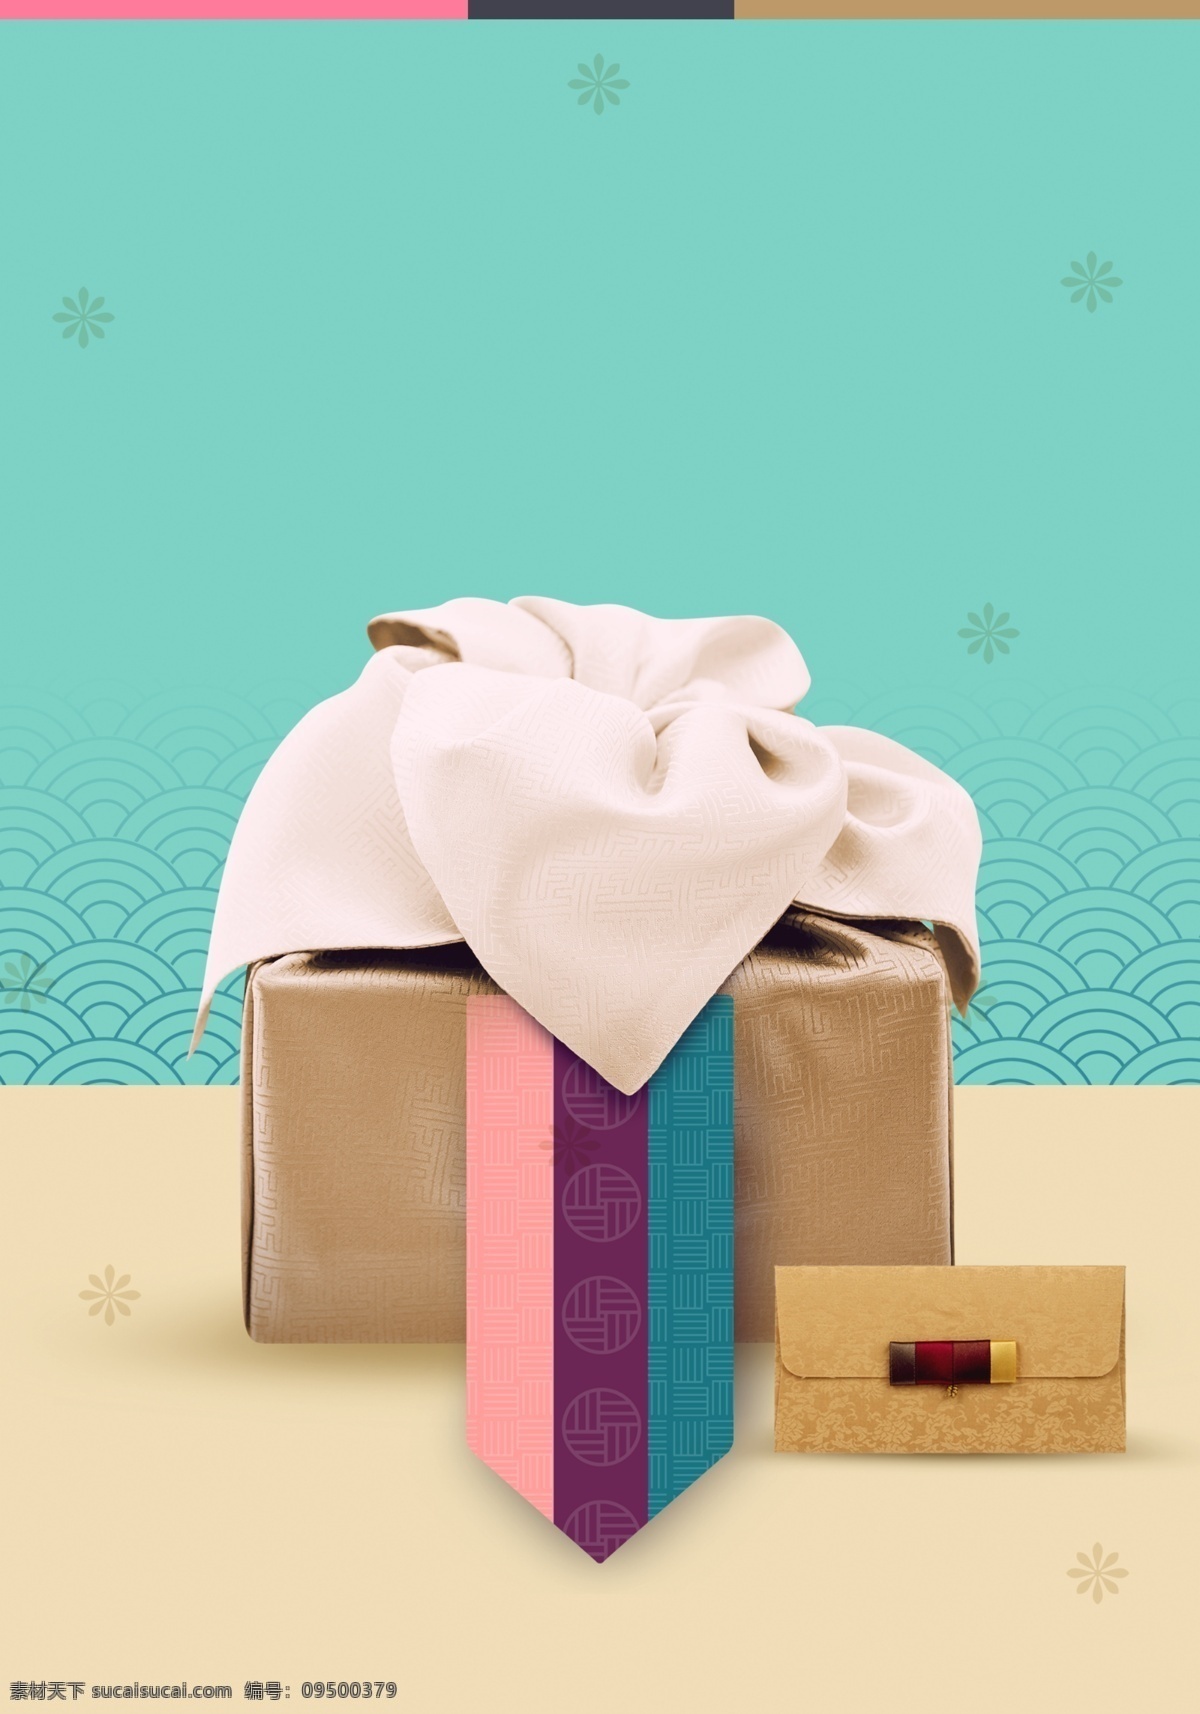 创意 中 国风 礼盒 背景 包装 大气 时尚背景 礼物 礼品盒 psd背景 背景设计 礼盒背景素材 新年礼盒背景 包装礼盒